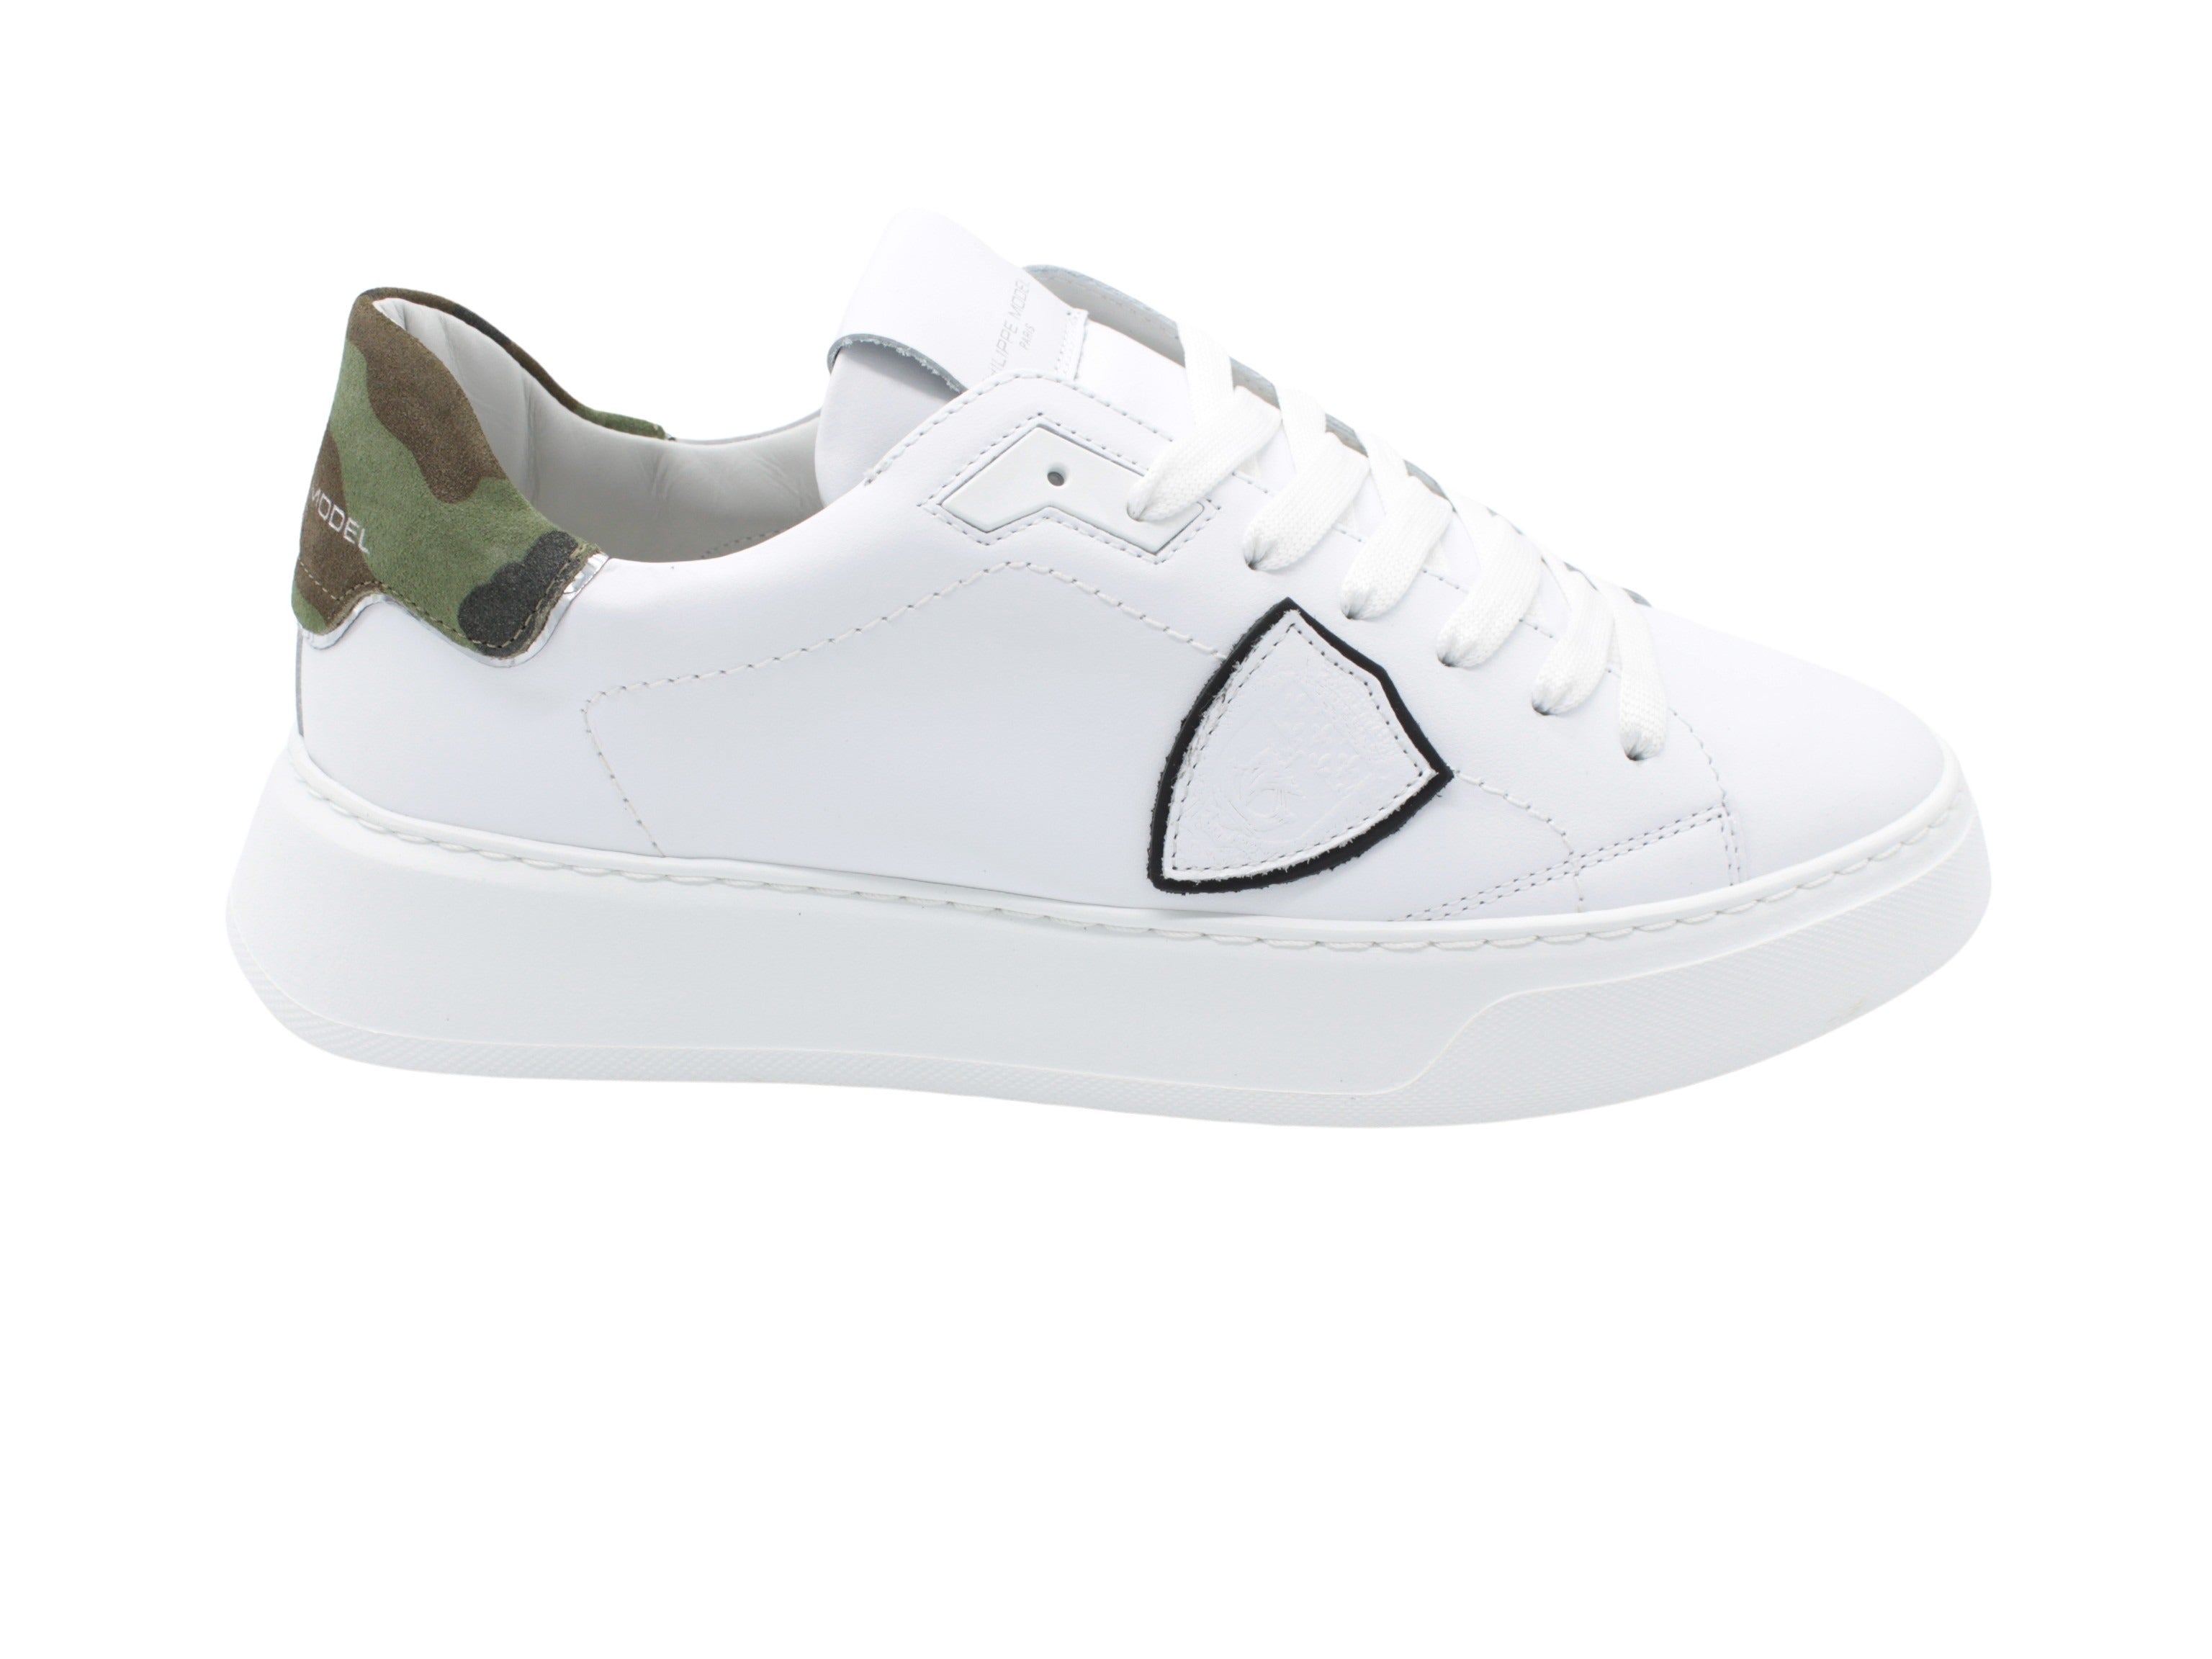 BTLU VC01 Temple white sneaker